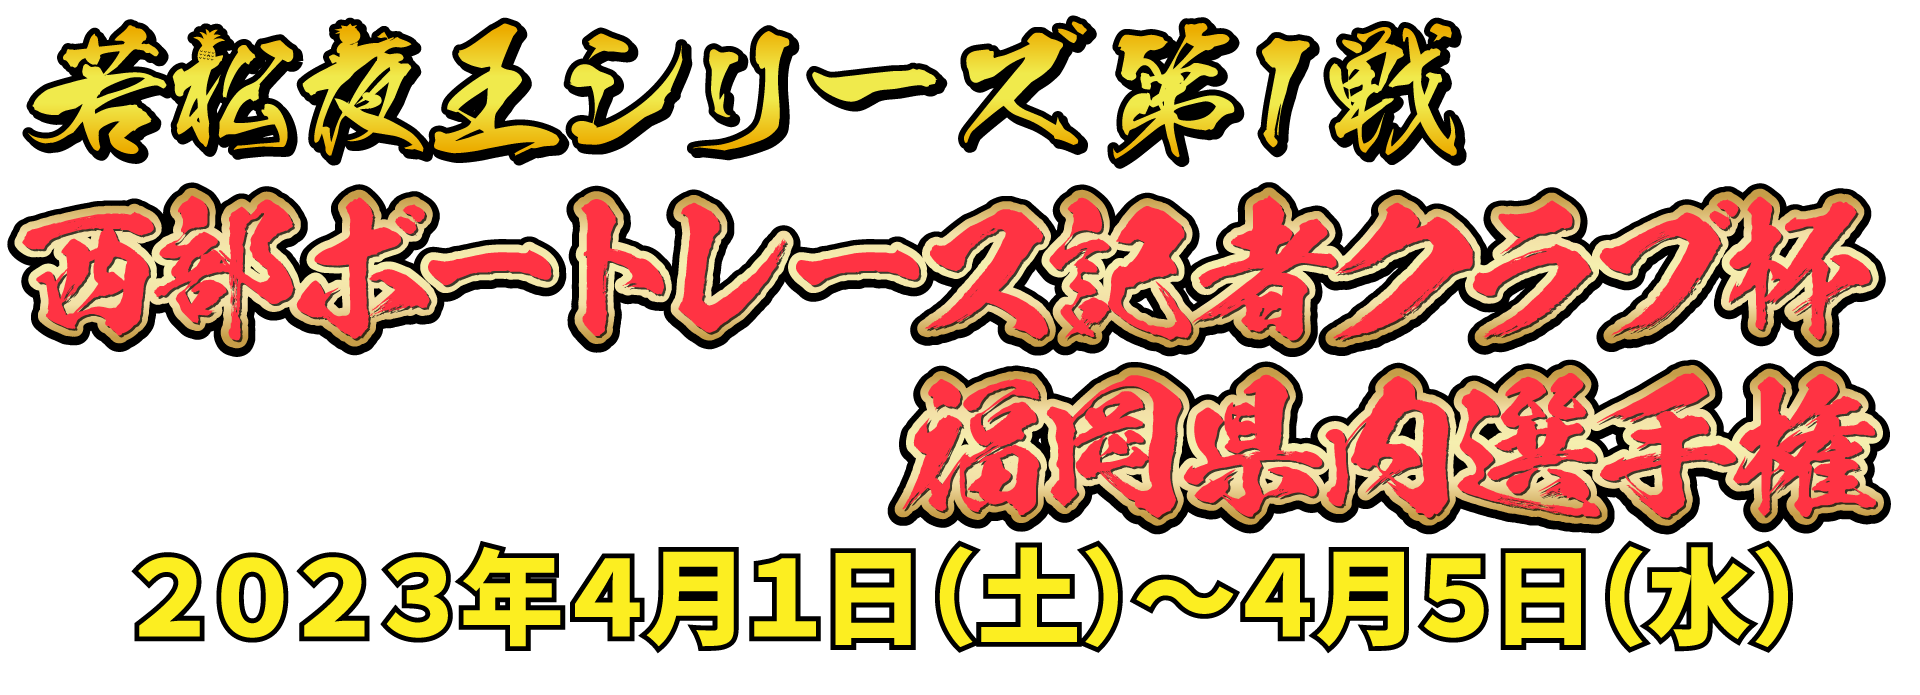 若松夜王シリーズ第1戦 福岡県内選手権 2022年6月19日(日)〜6月24日(金)